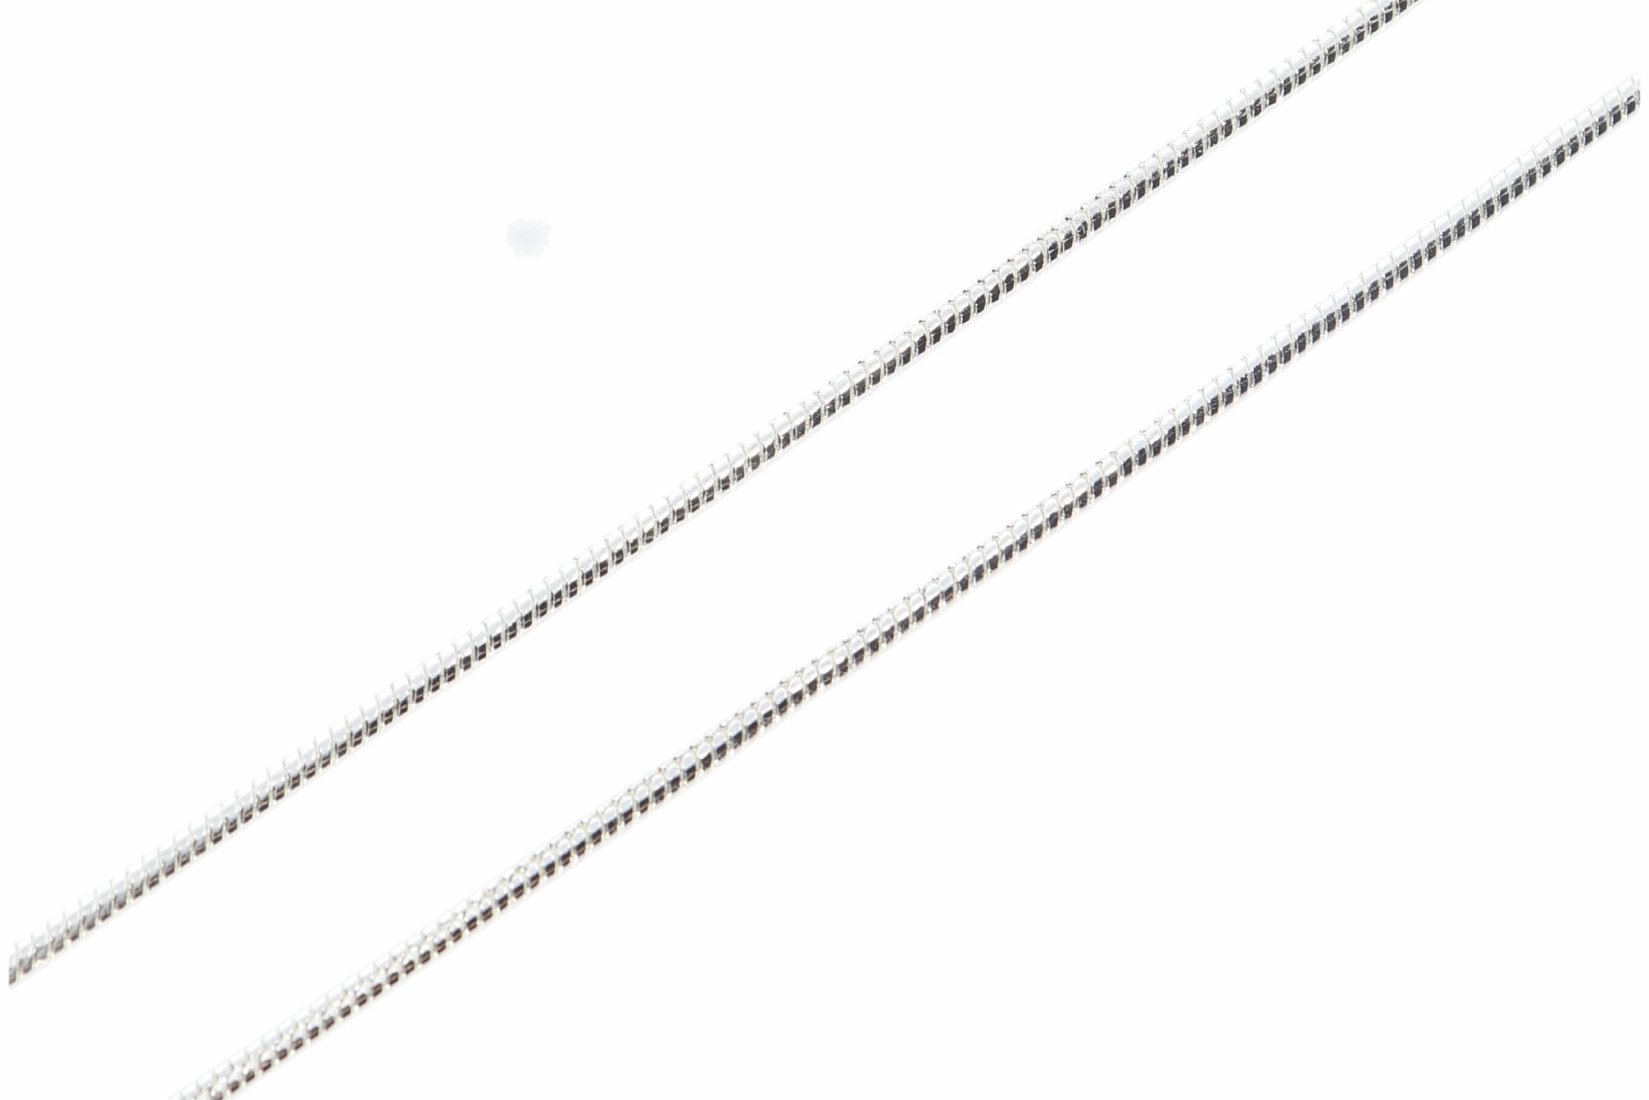 Schlangen Halskette 2mm Silber Farben 40-60cm & Karabiner Verschluss